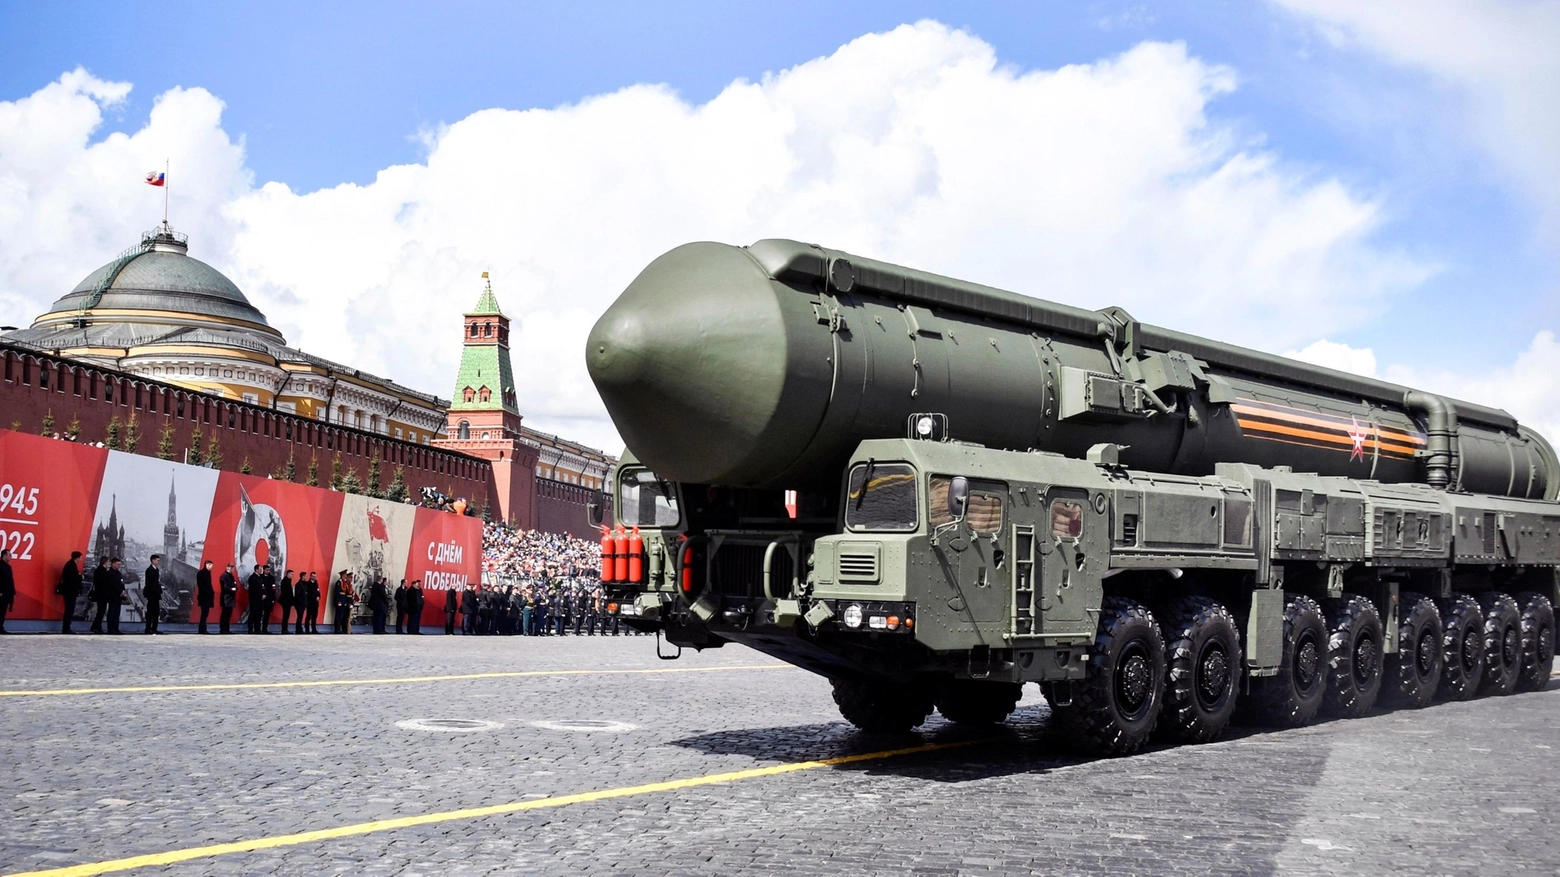 A livello di cifre il potenziale atomico di Mosca è maggiore rispetto a quello americano. Dallo scorso anno Putin ha cominciato ha spostare i missili Iskander in Bielorussia